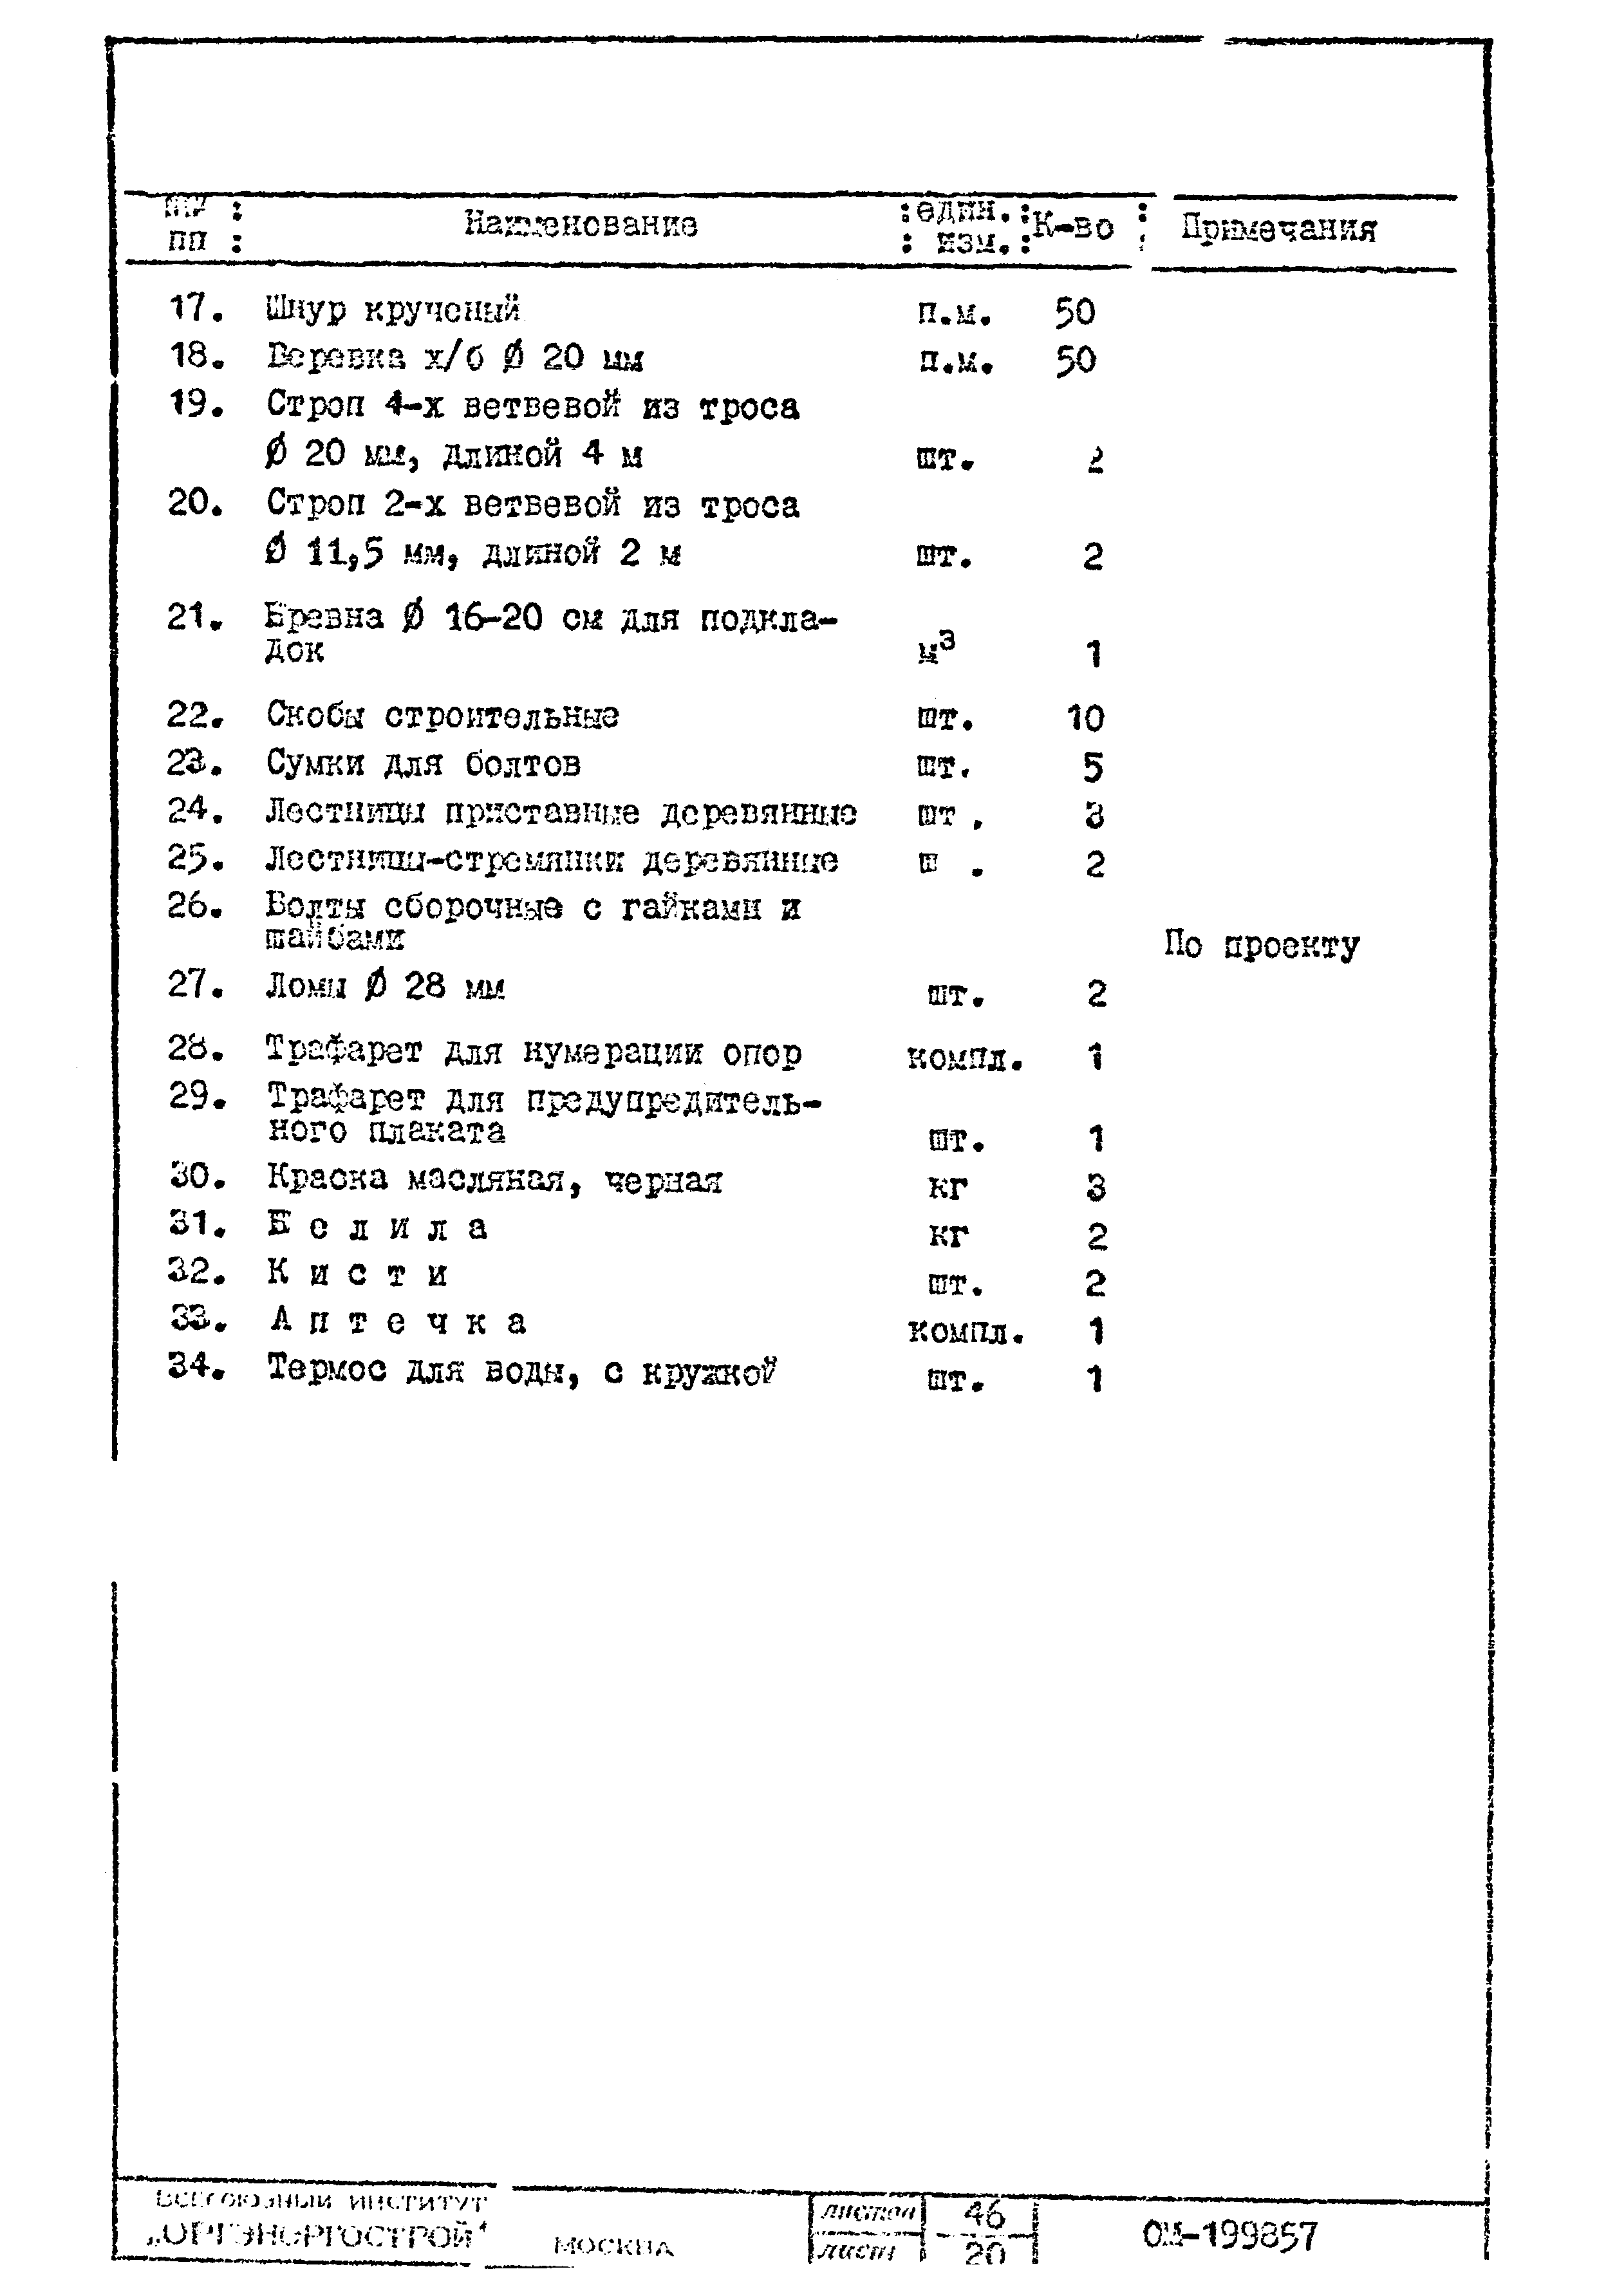 Технологические карты К-II-26-1